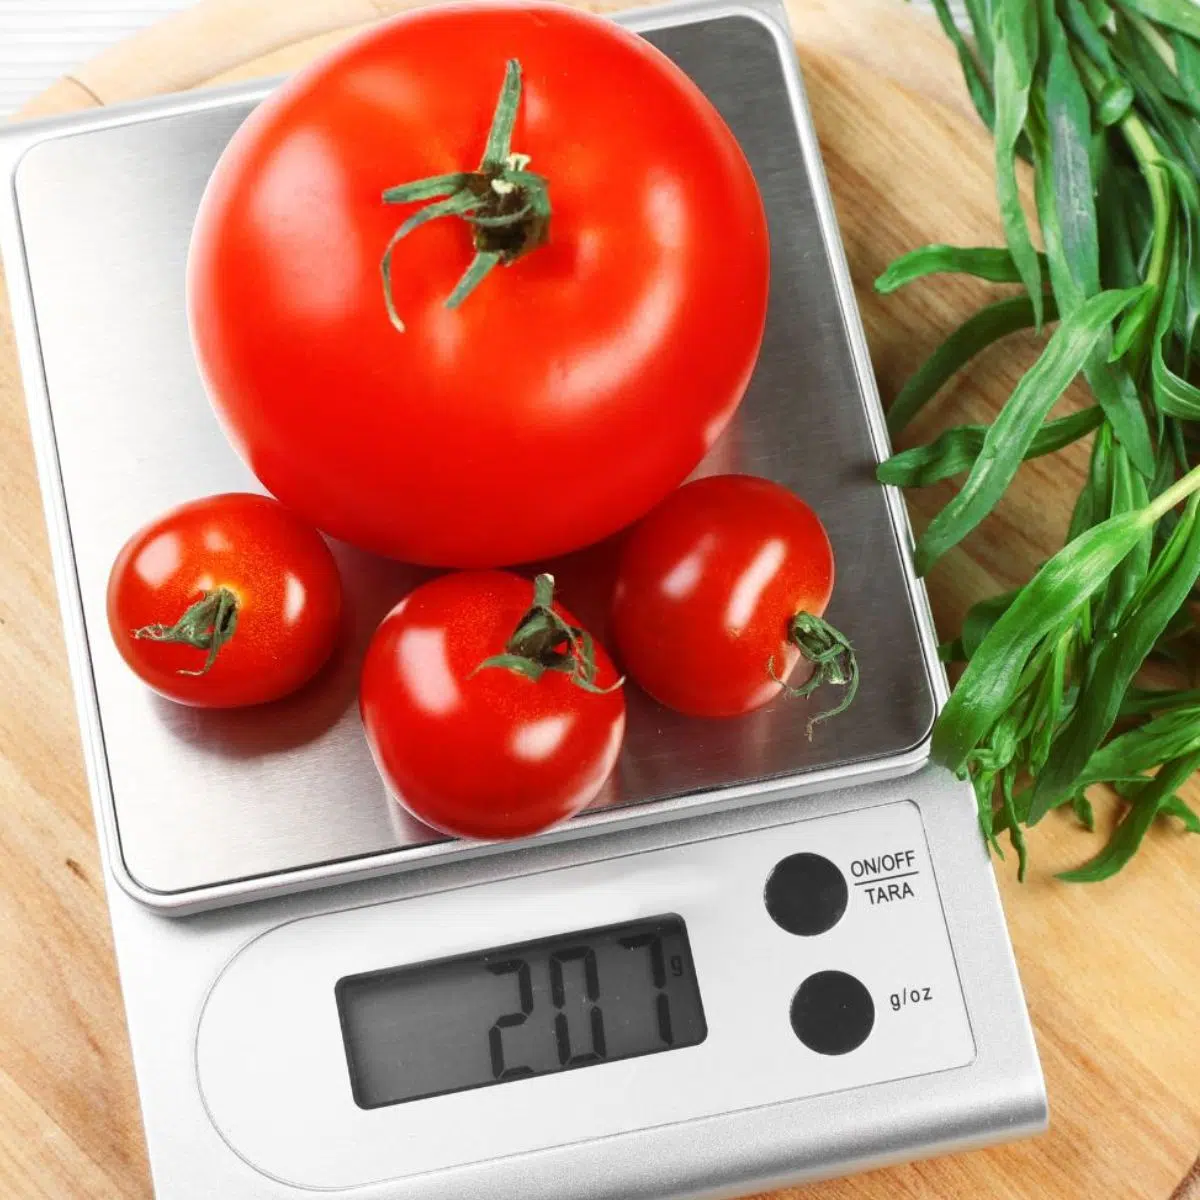 キッチン スケールとグラムで計量された新鮮なトマトで示されている調理とベーキングのためのポンド換算のグラム。